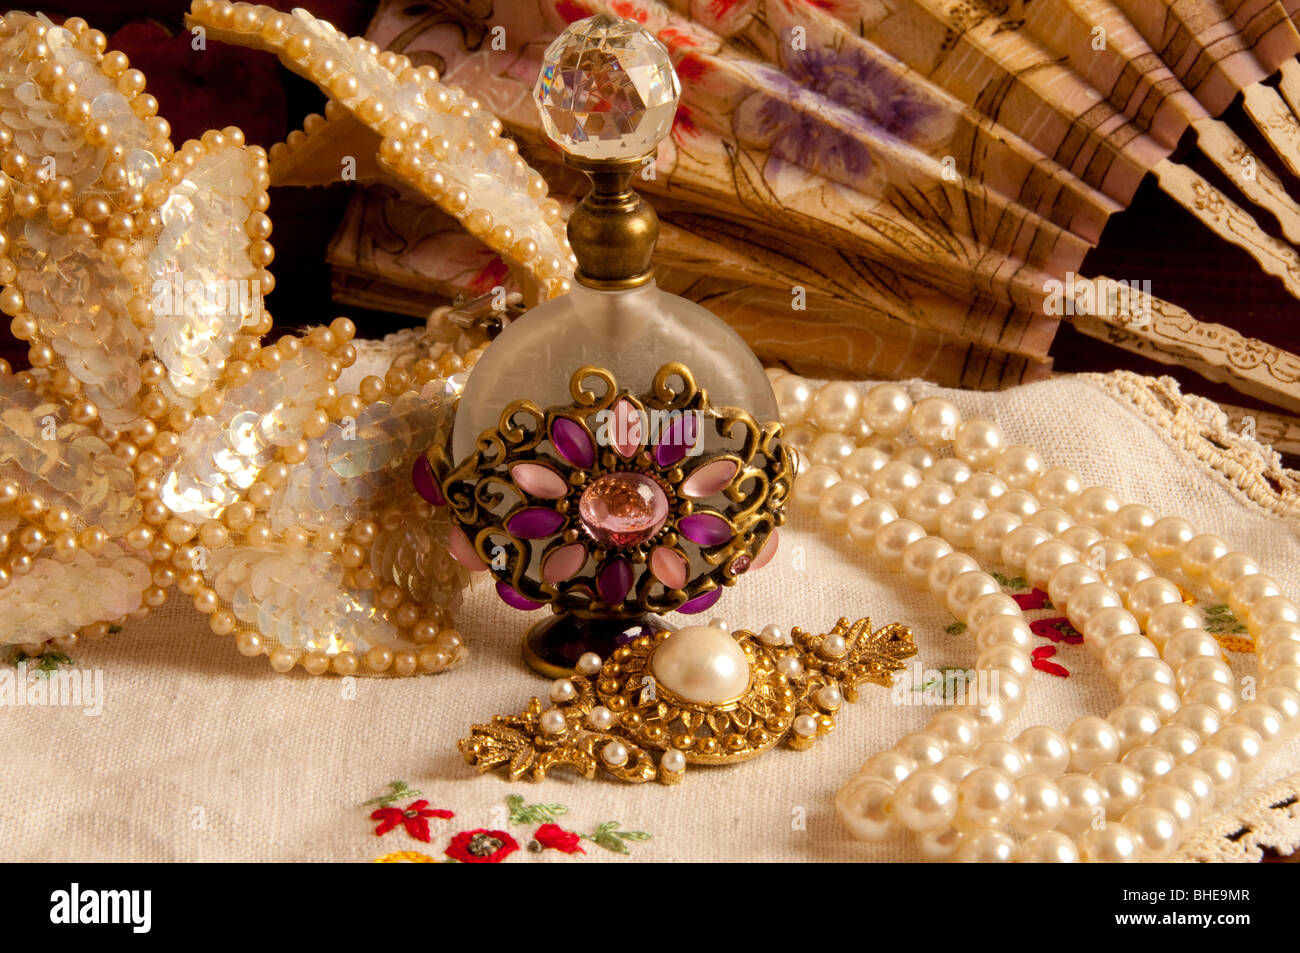 Féminin antique articles dresser tiara,flacon de parfum papier, ventilateur, collier de perle blanc napperon brodé sur Banque D'Images